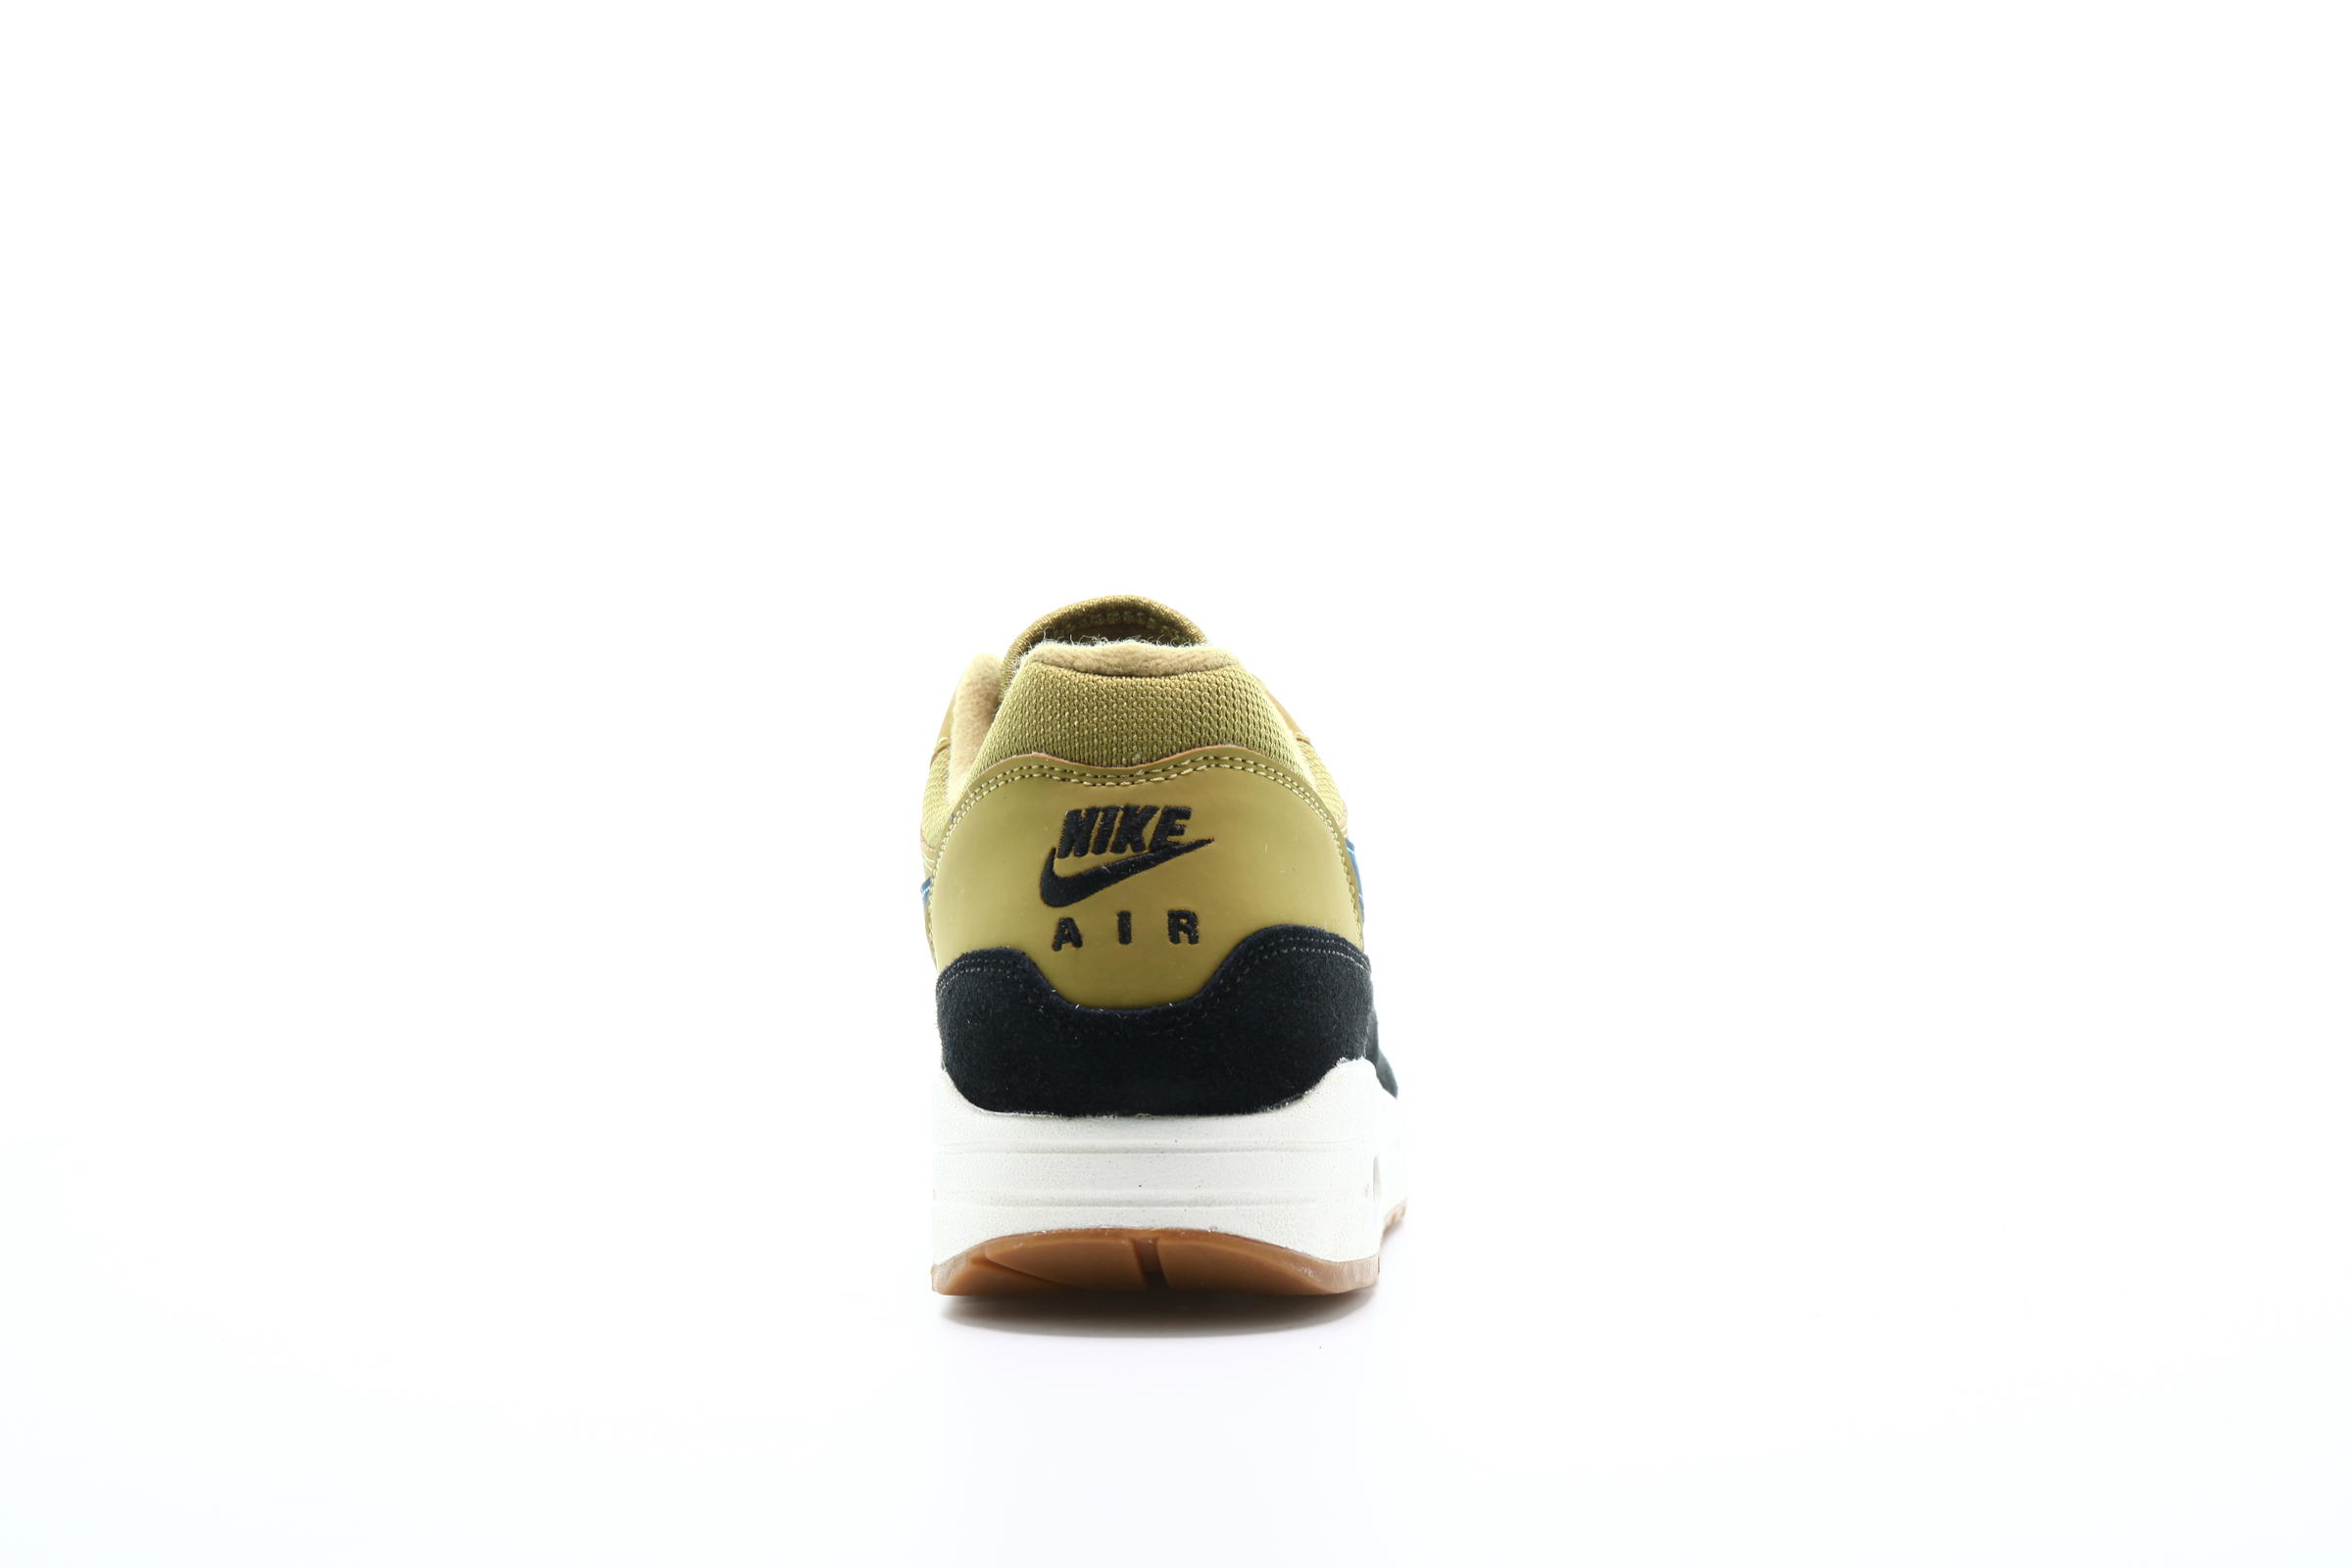 Nike Air Max 1 "Golden Moss"